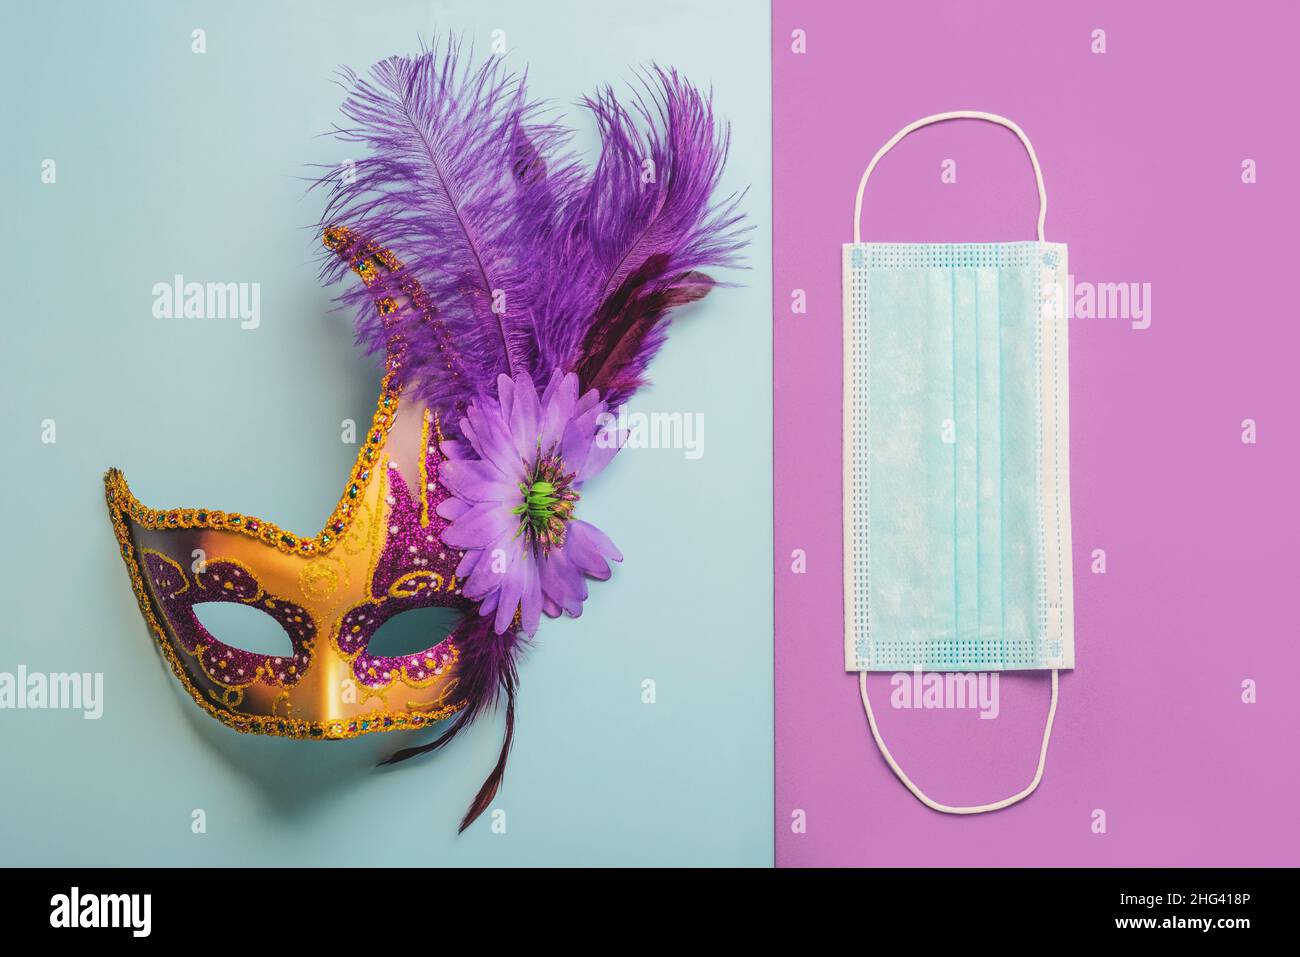 Konzept des Karnevals während des Covid-19. Venezianische Karnevalsmaske mit schützender OP-Maske auf blauem und violettem Hintergrund. Karneval Feier concep Stockfoto